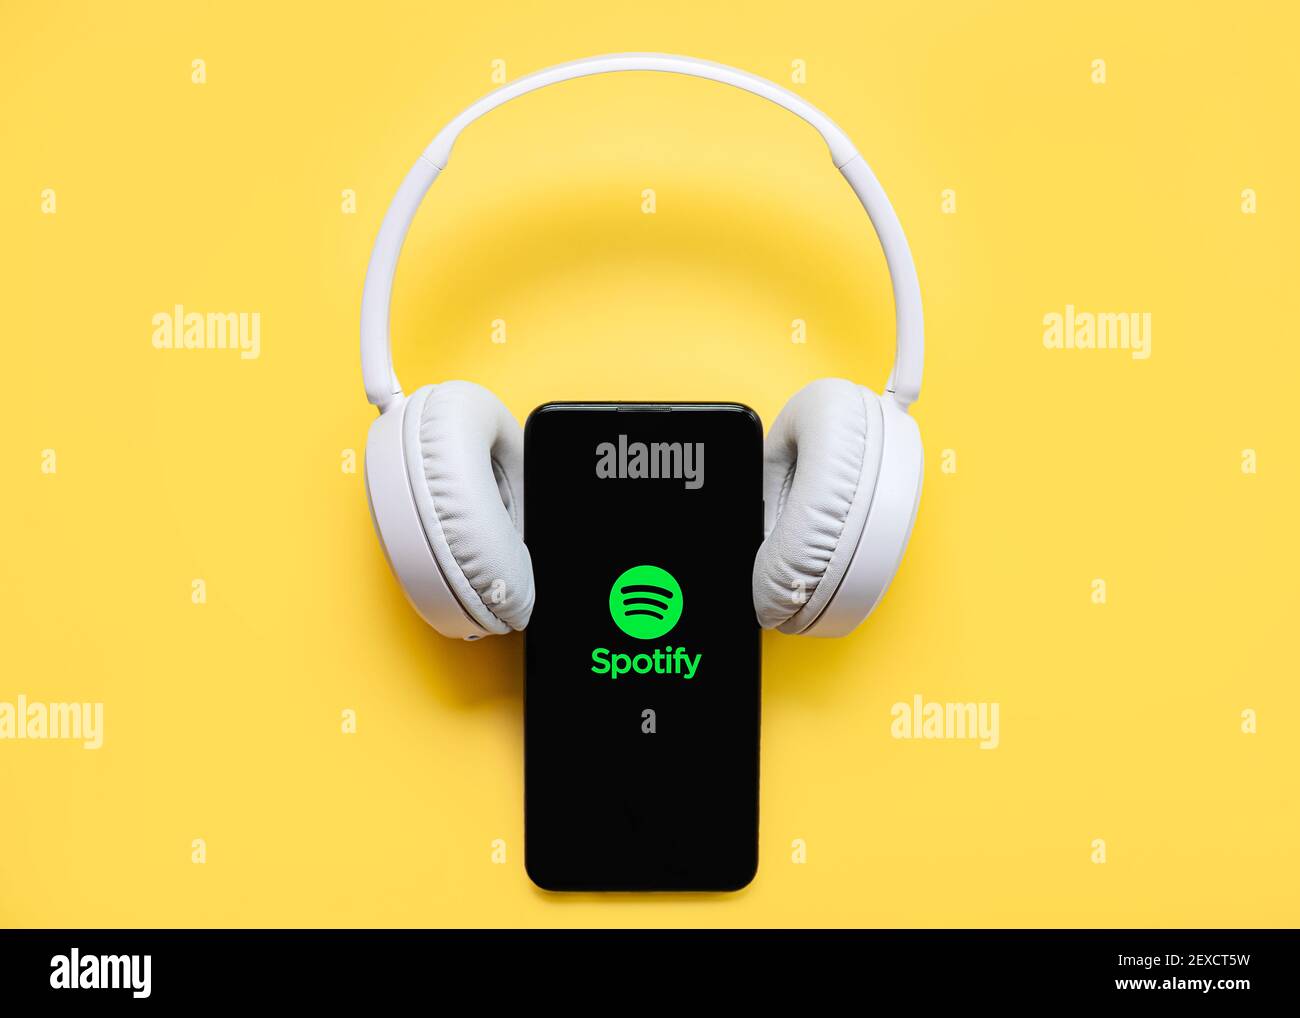 Spotify-Anwendungssymbol auf schwarzem Bildschirm des Smartphones mit weißem Display Kabelloser Kopfhörer auf gelbem Hintergrund Stockfoto